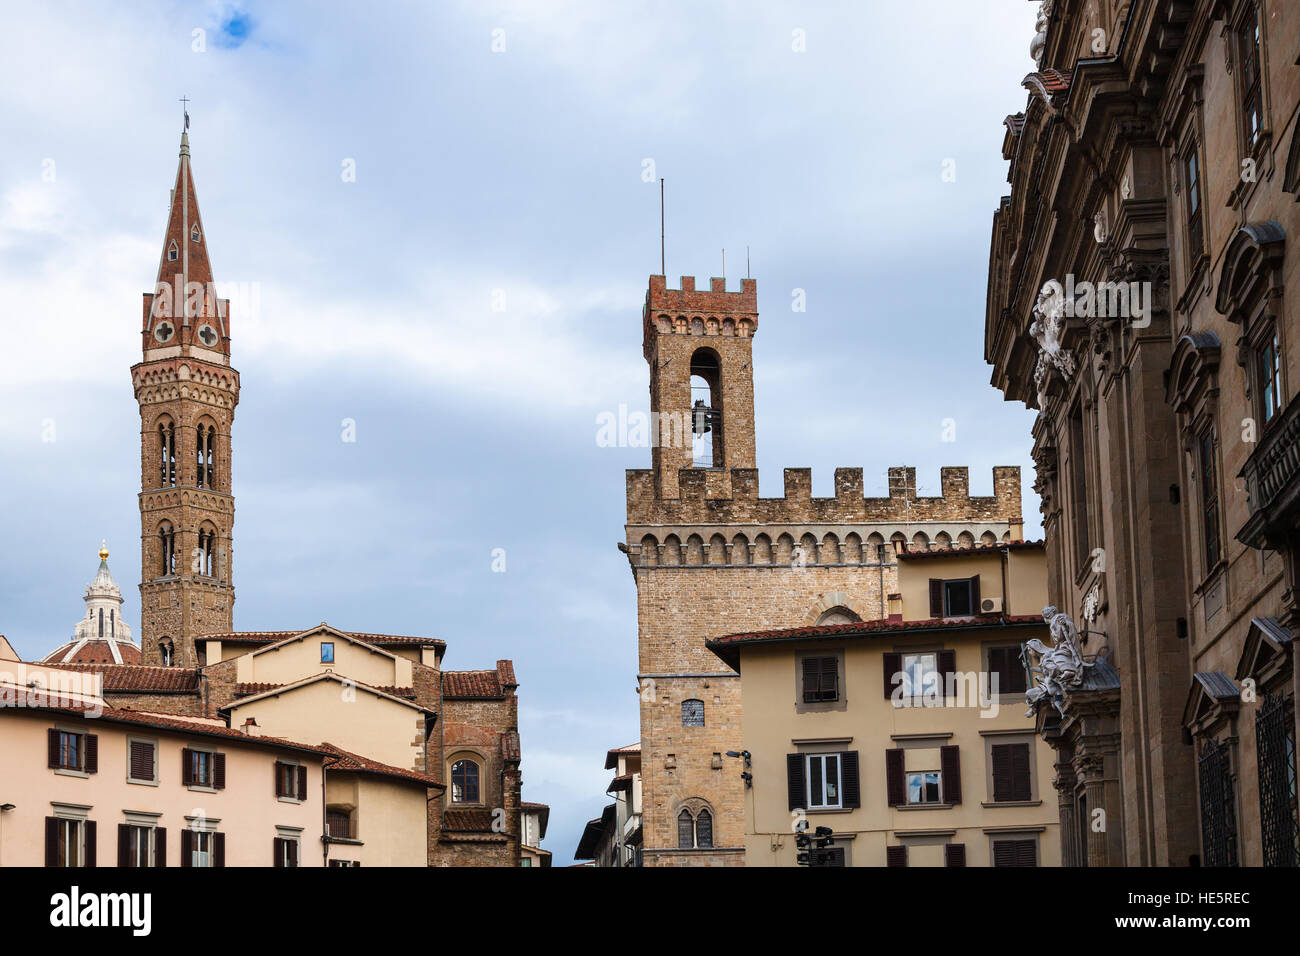 Viaggio in Italia - le torri della Badia Fiorentina e Palazzo del Bargello su case nella città di Firenze Foto Stock